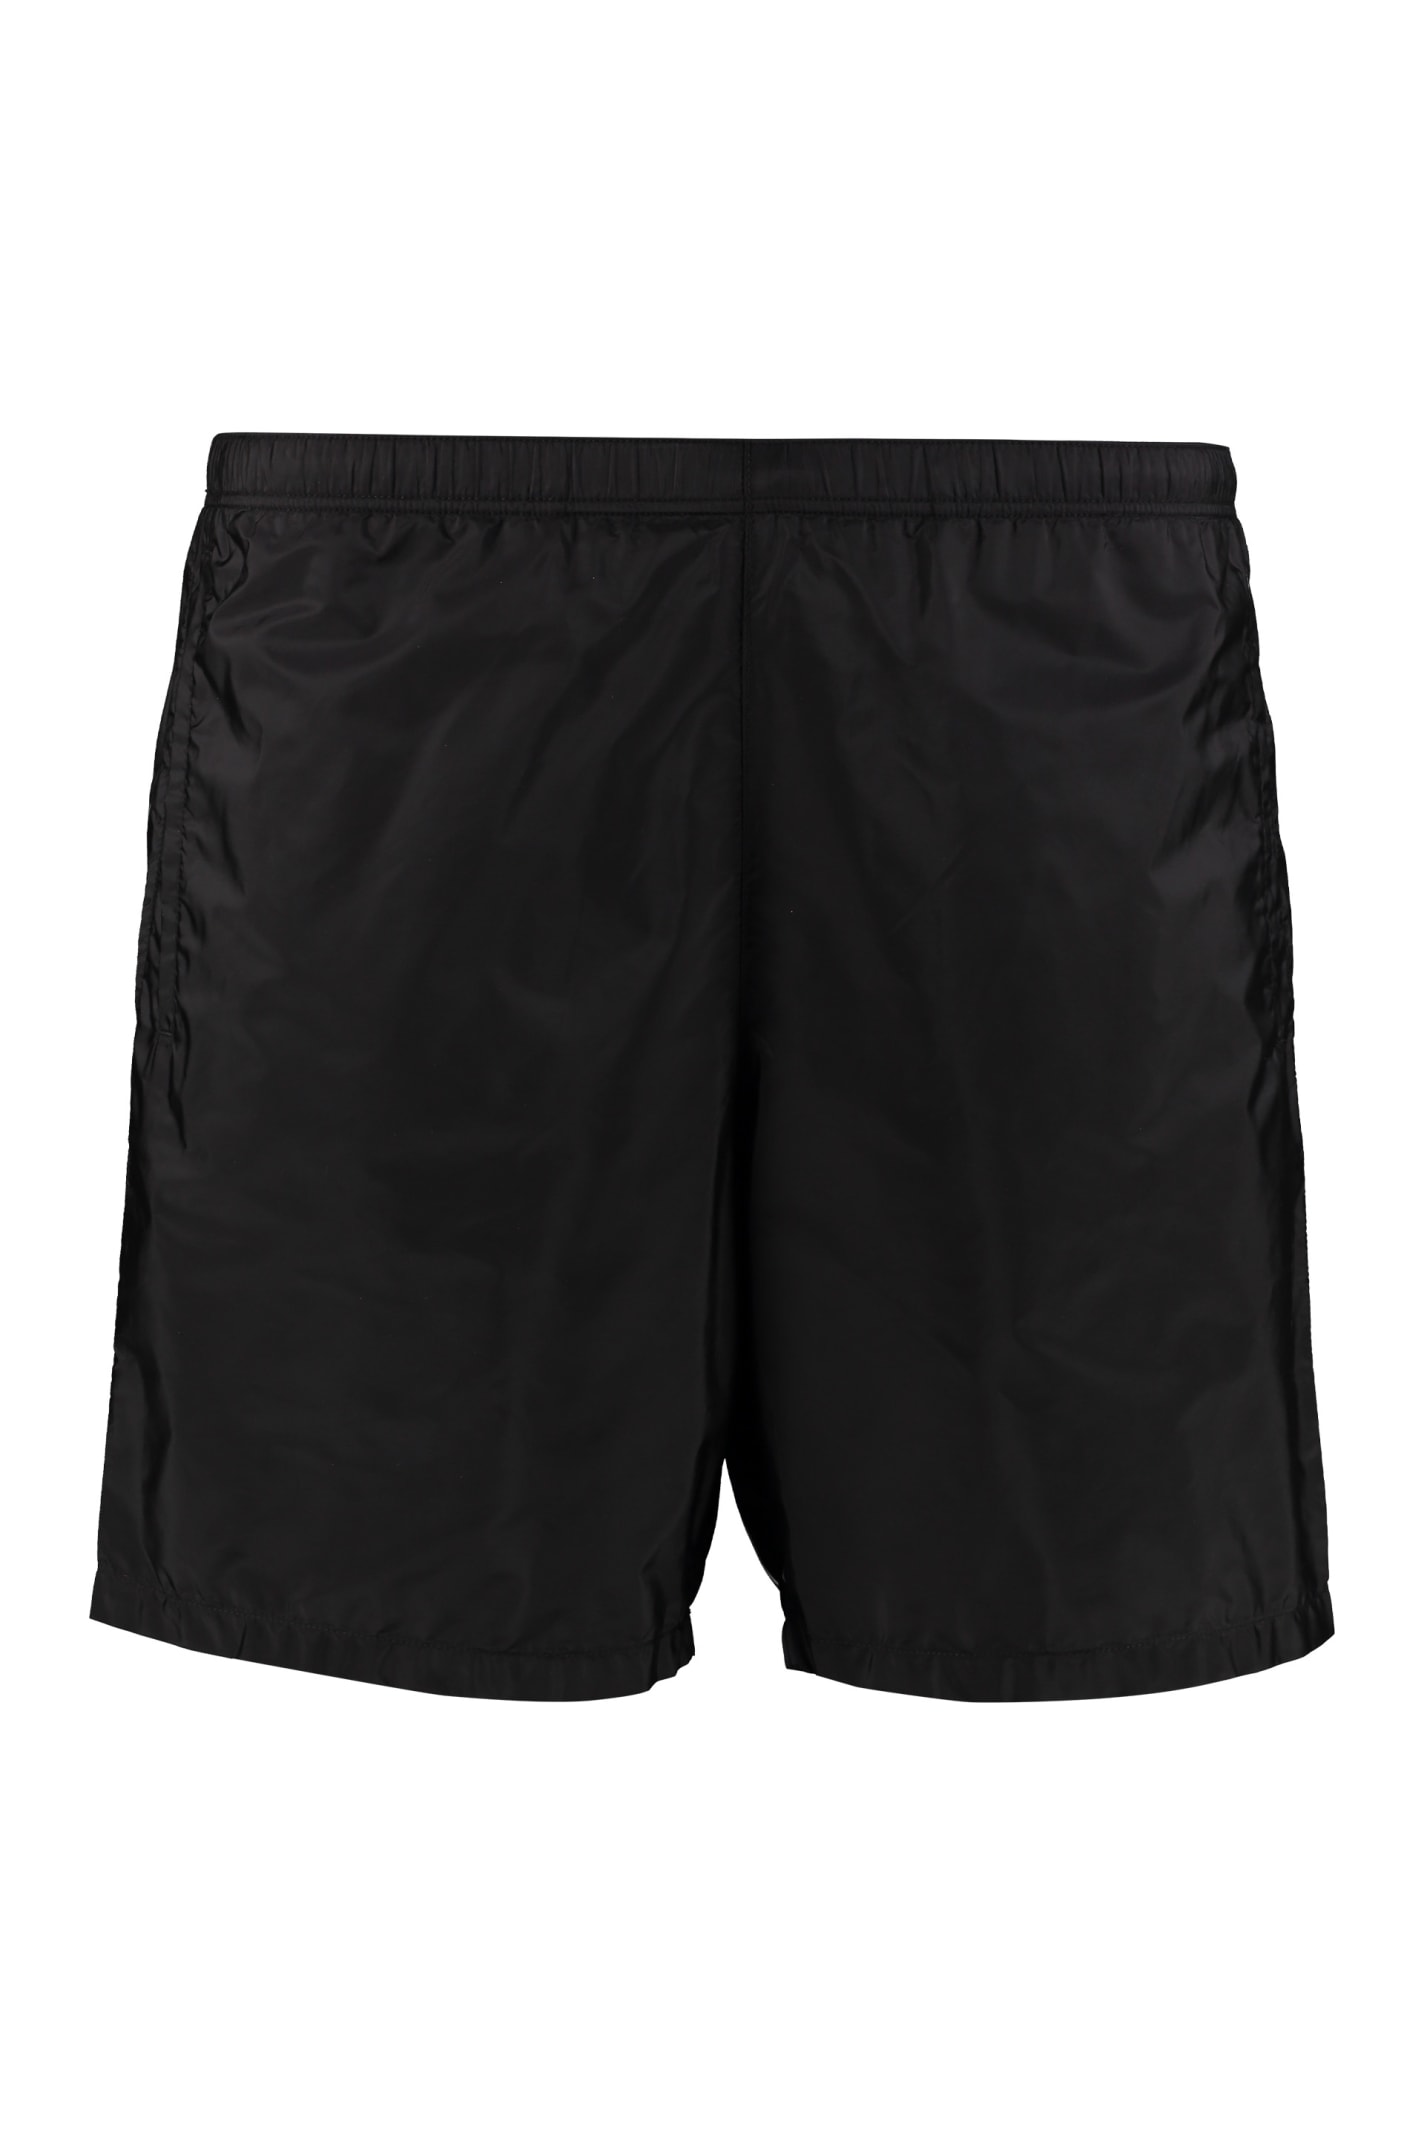 Prada Nylon Swim Shorts In Black